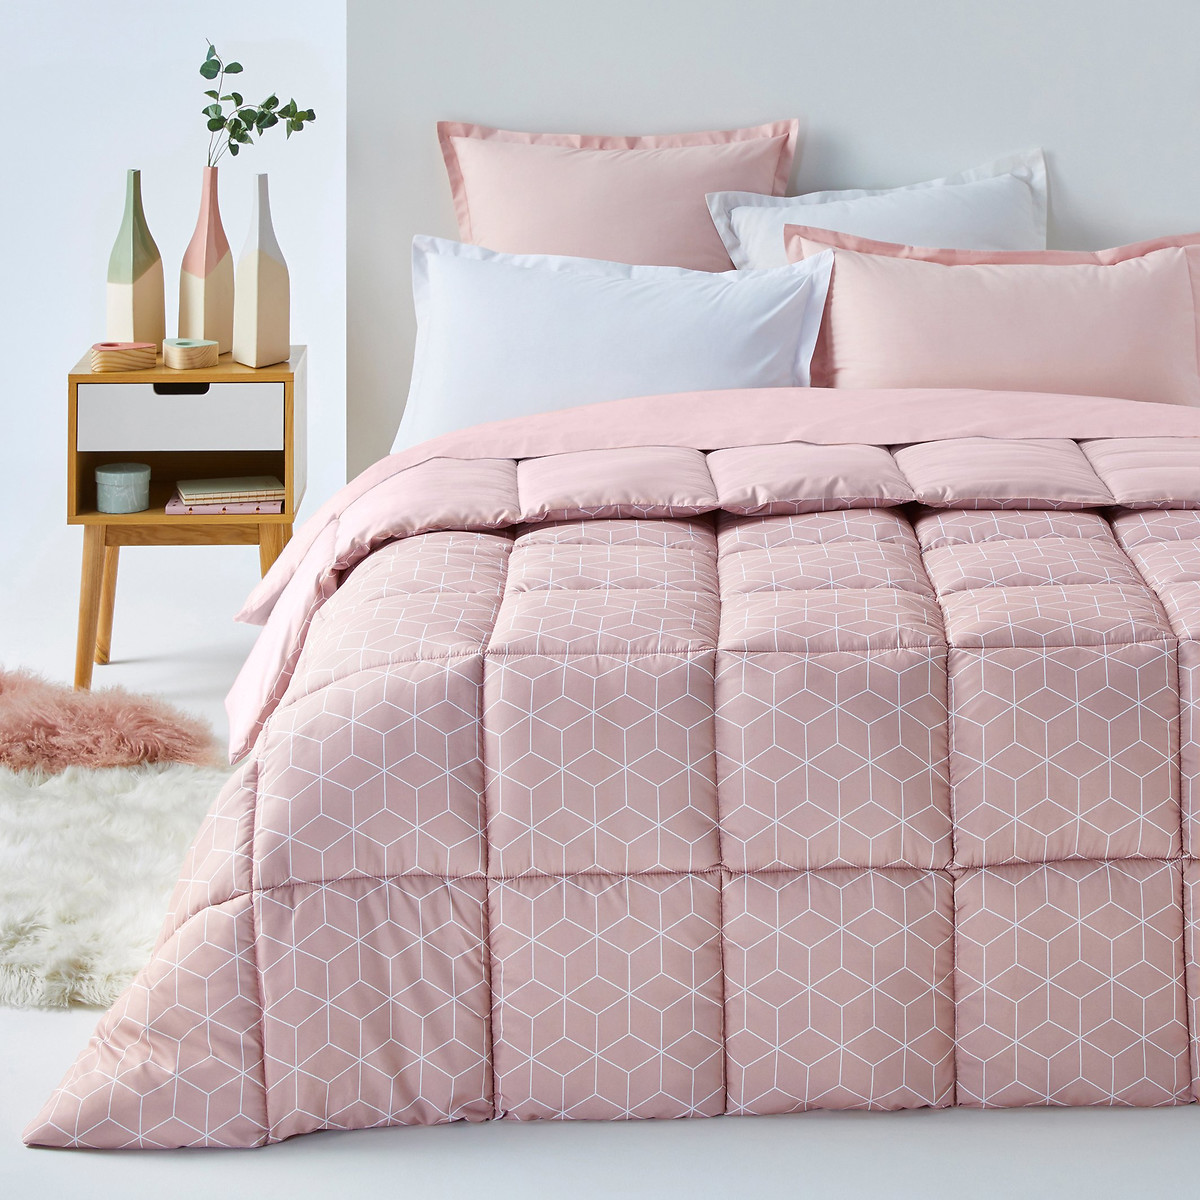 Одеяло La Redoute С рисунком Decio 140 x 200 см розовый, размер 140 x 200 см - фото 1